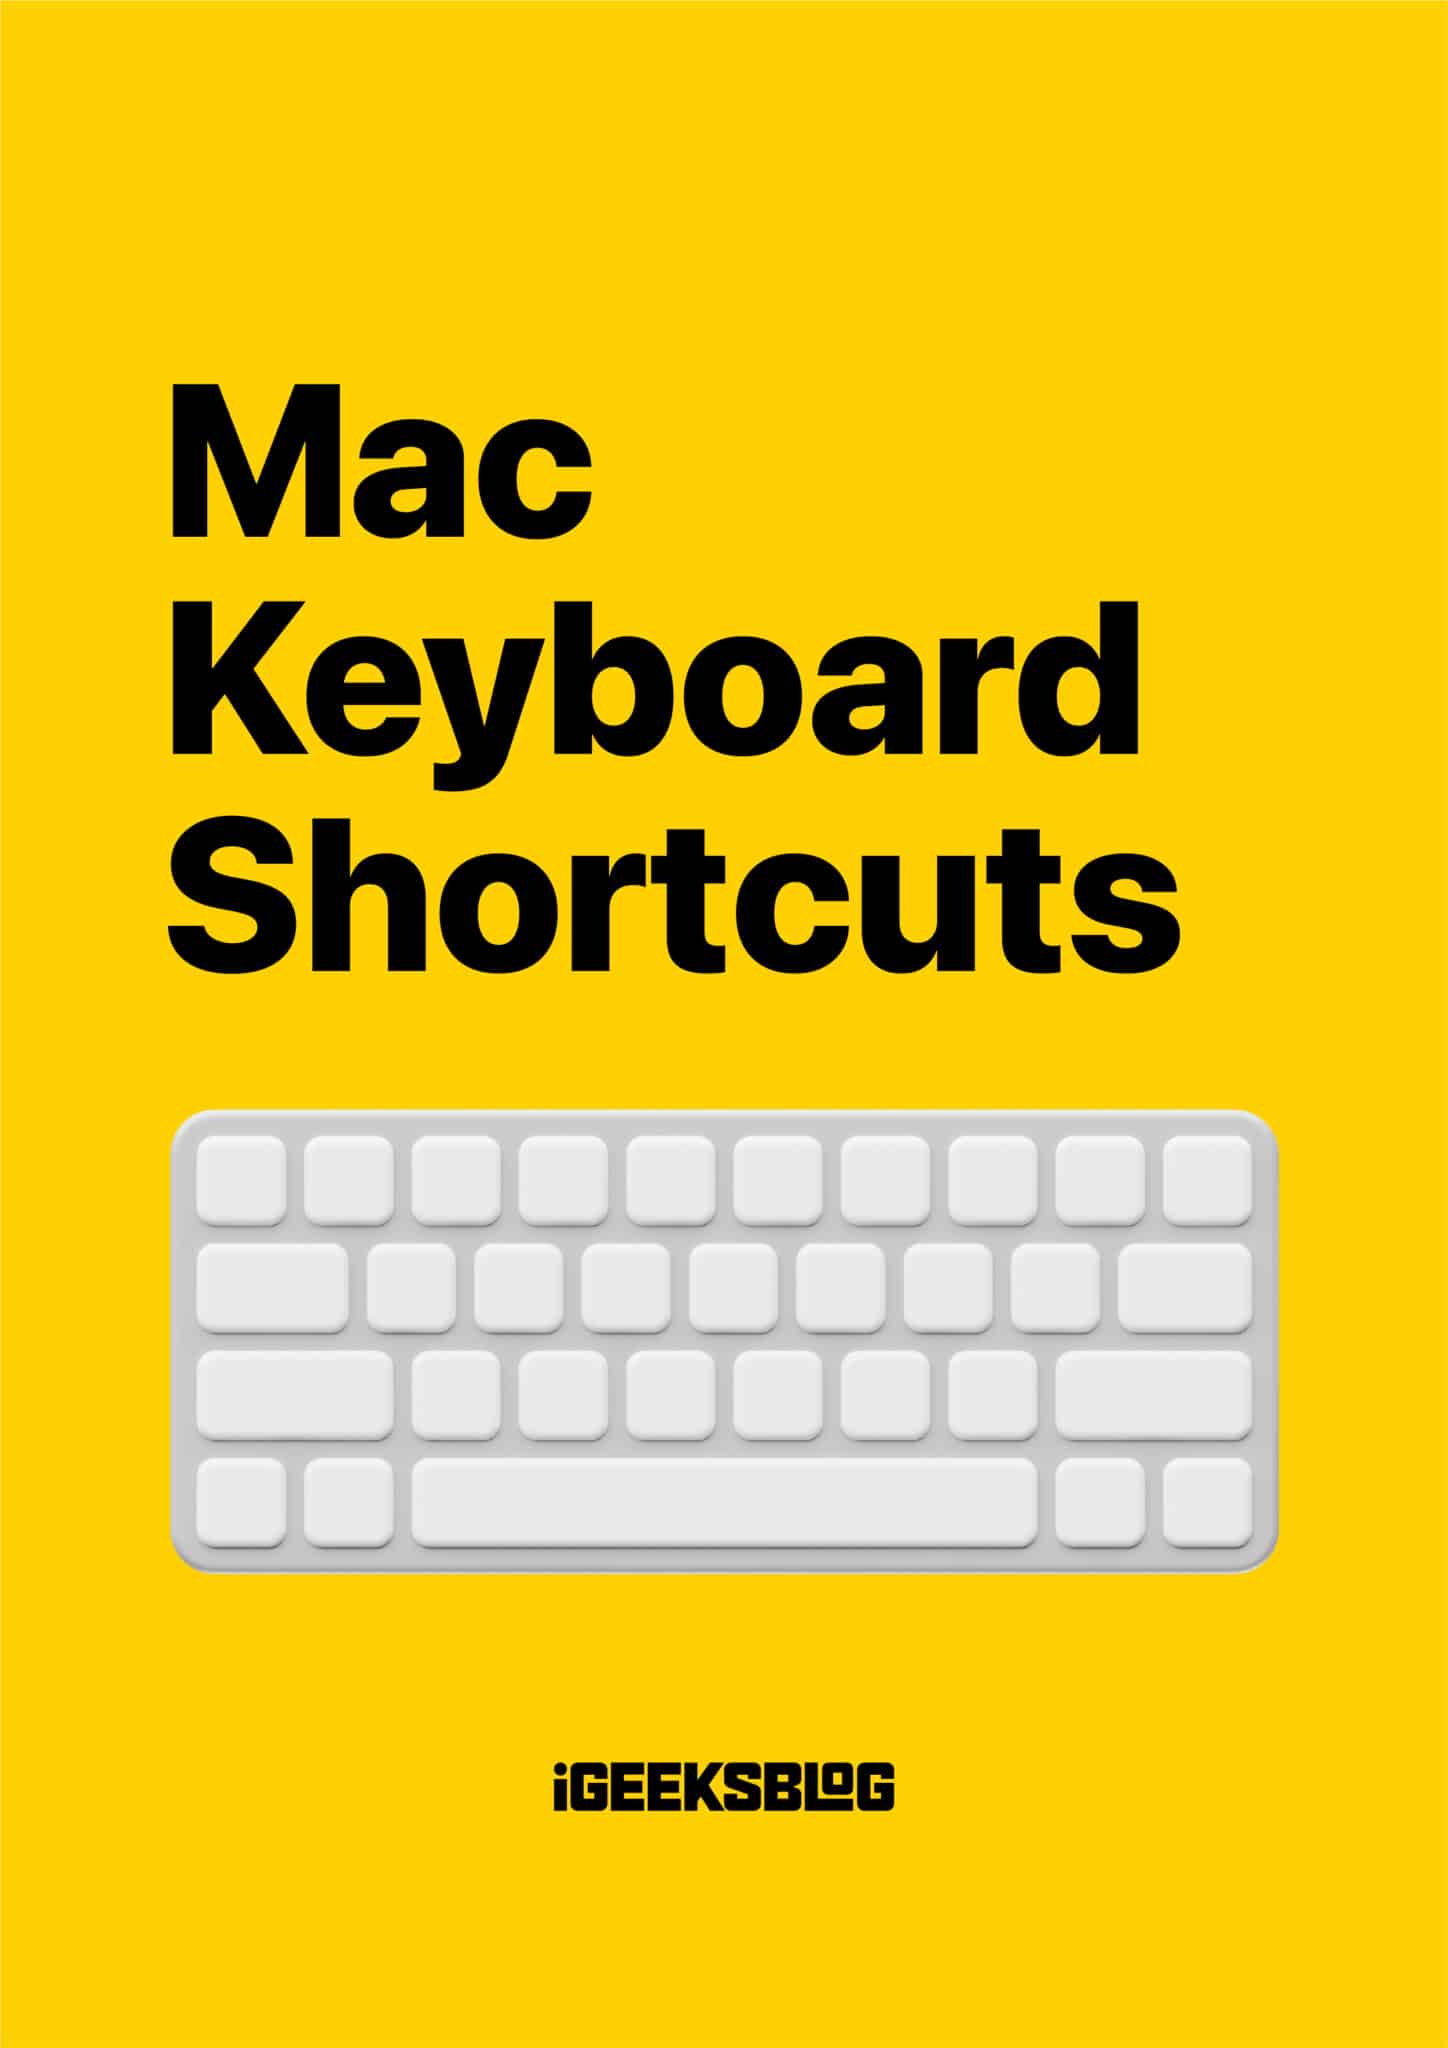 Mac keyboard shortcuts scaled 1